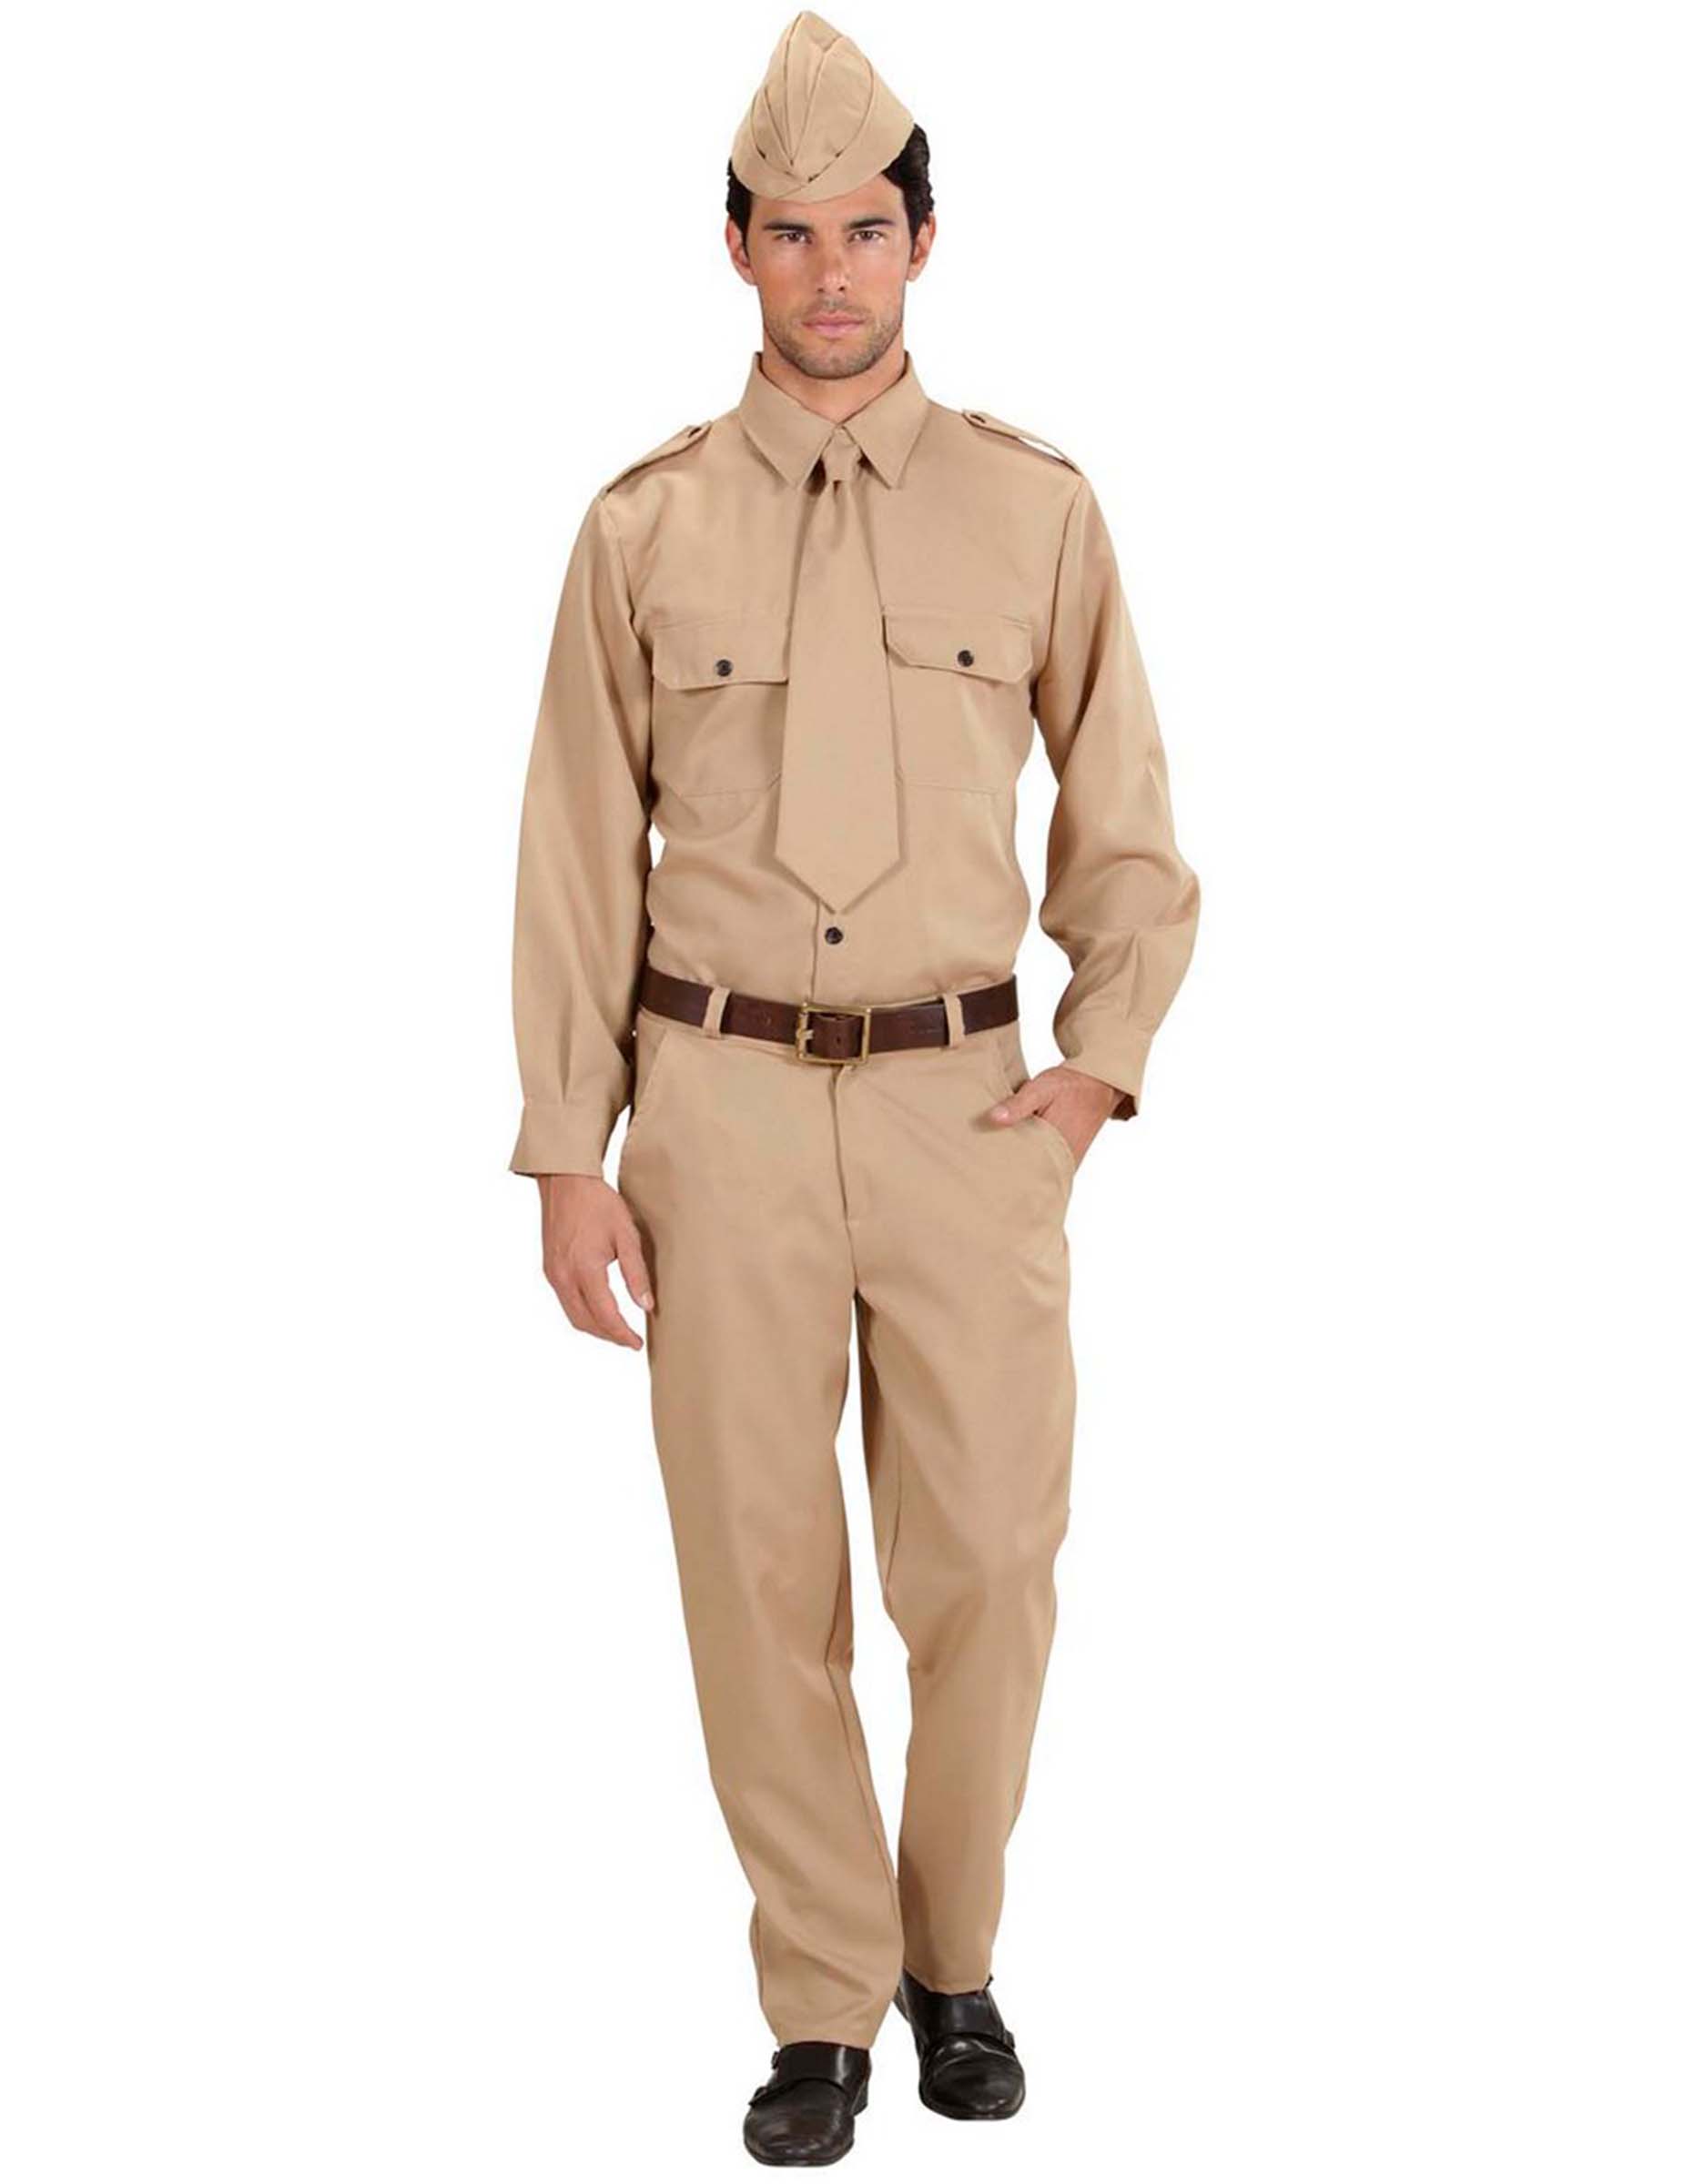 Amerikanischer Soldat - Herren-Kostüm - sandfarben von WIDMANN